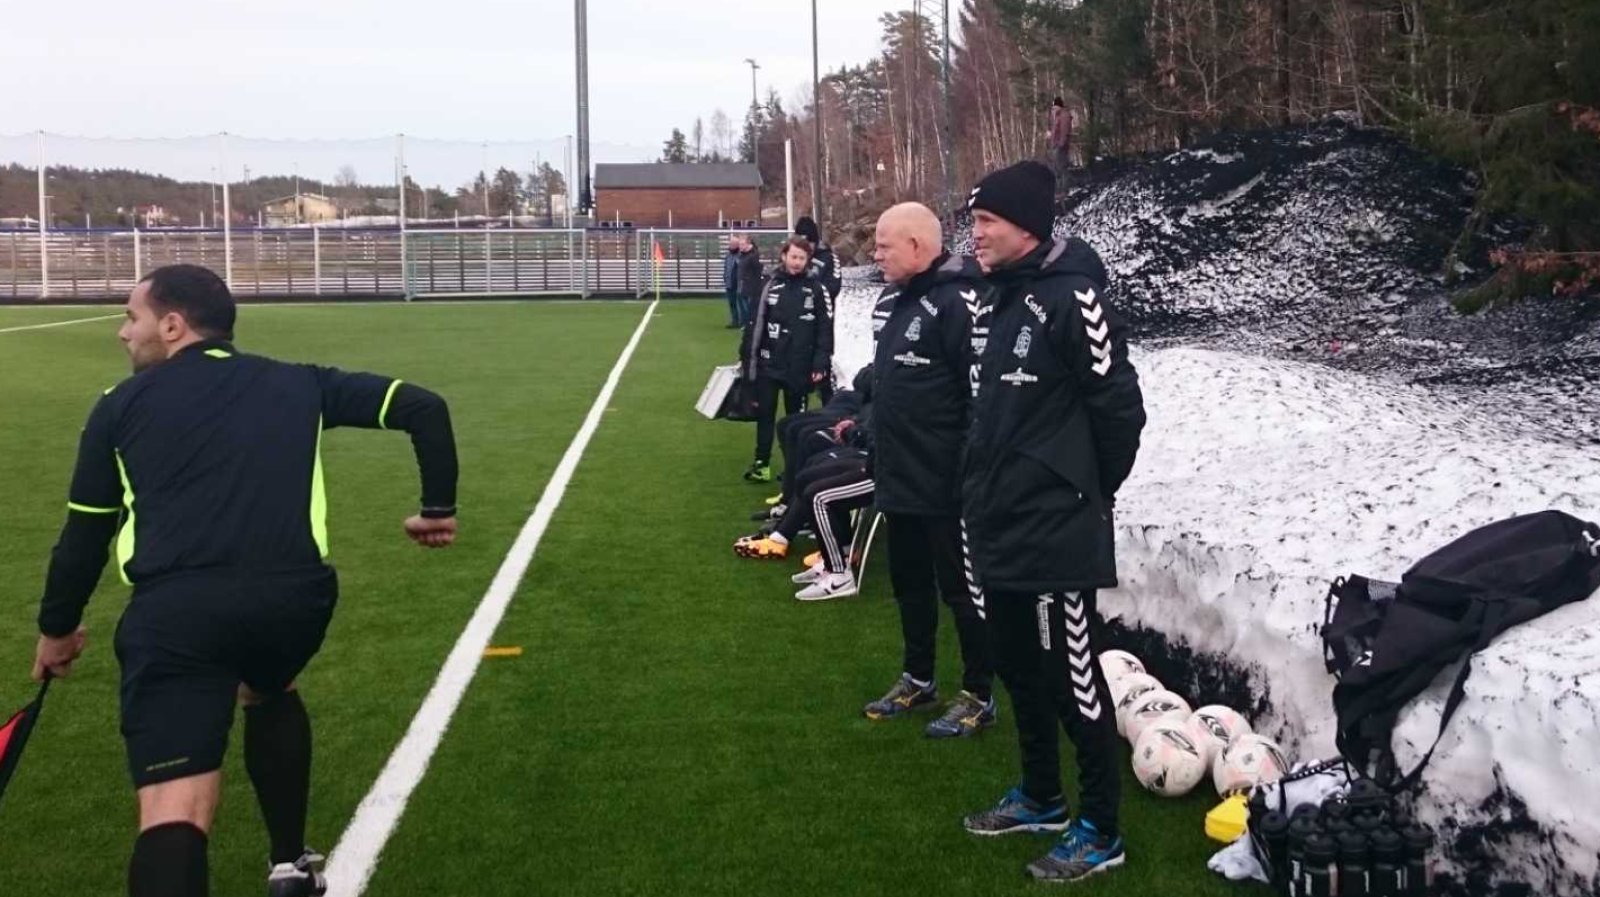 Frank Bredal og Knut Tørum kan glede seg over at de slipper snø når Arendal skal spille treningskamper på La Manga.